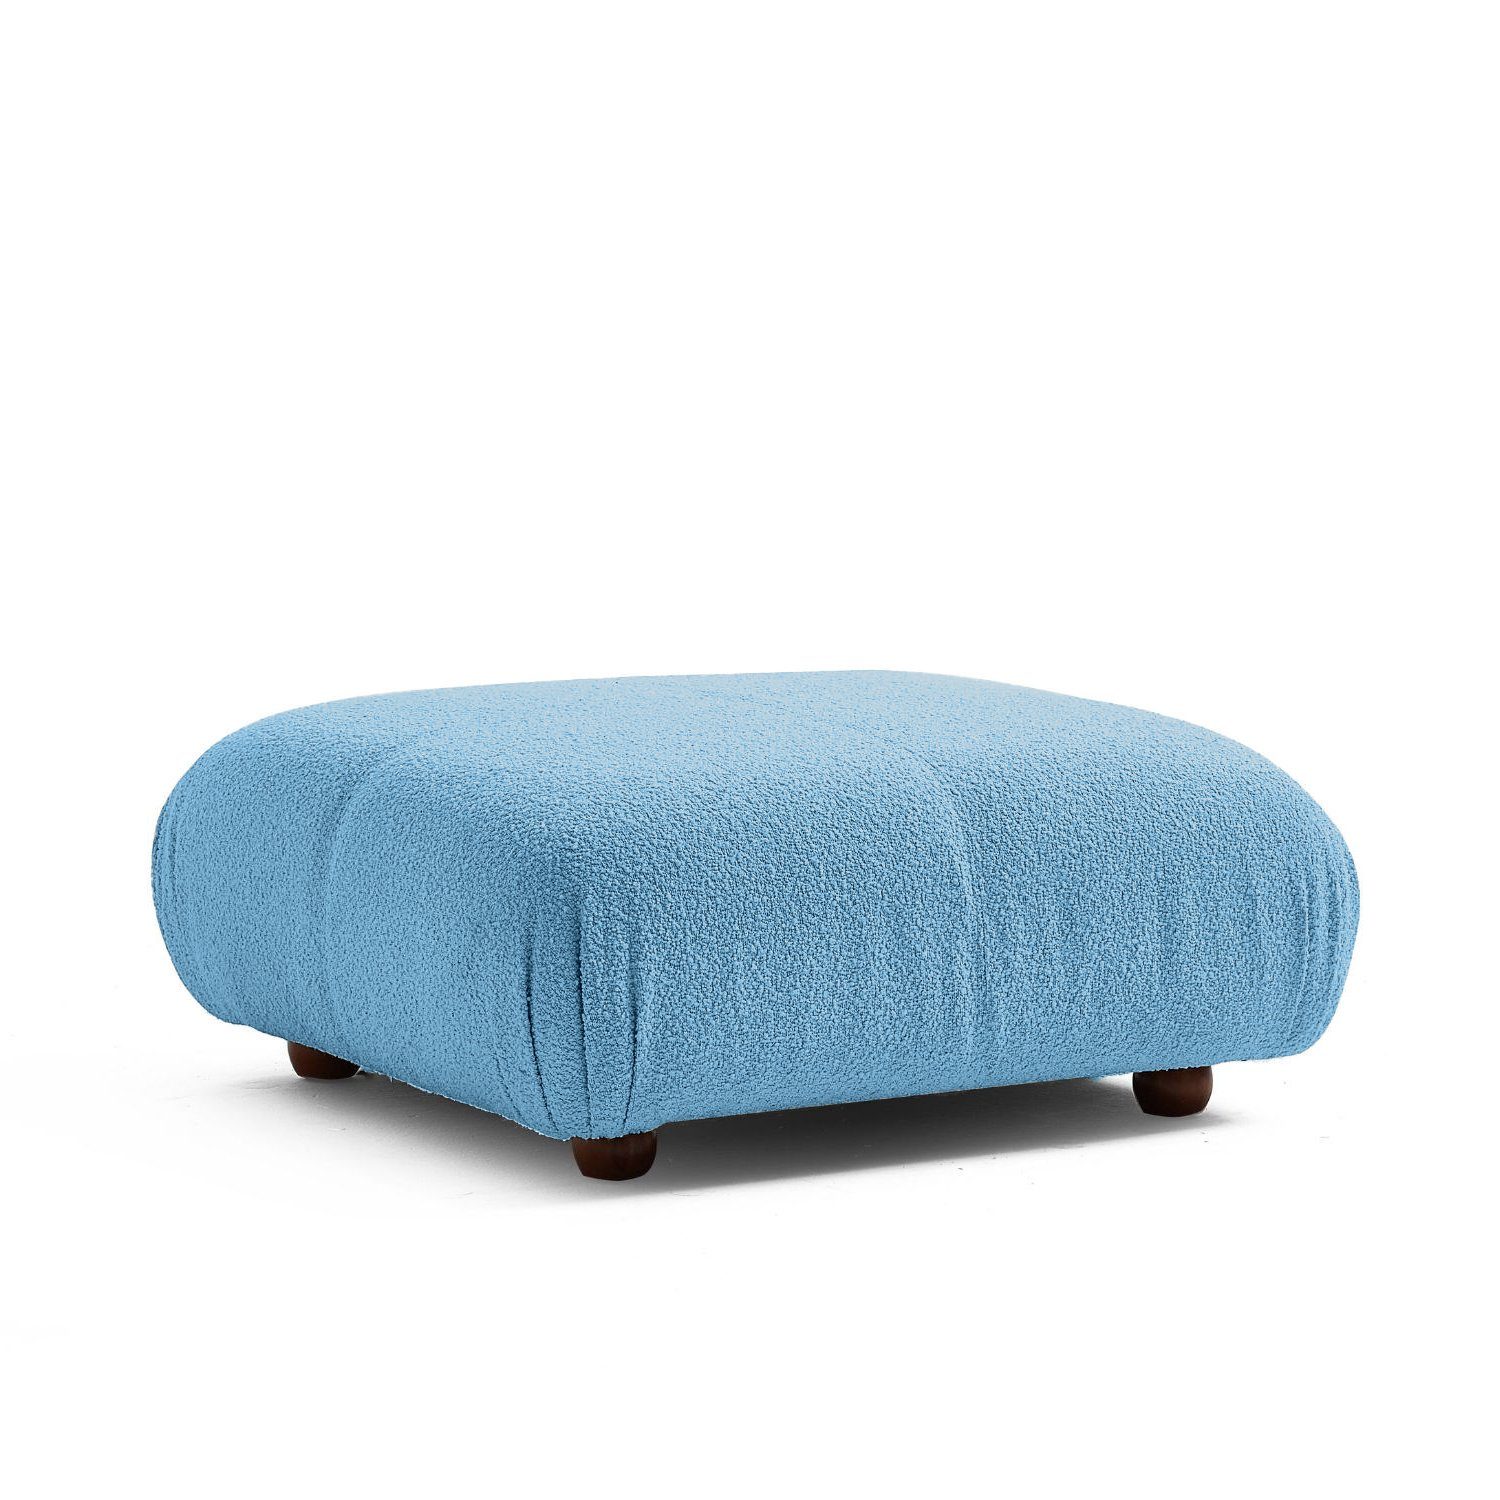 Touch me Sofa Knuffiges Sitzmöbel neueste Generation aus Komfortschaum Blau-Lieferung und Aufbau im Preis enthalten!